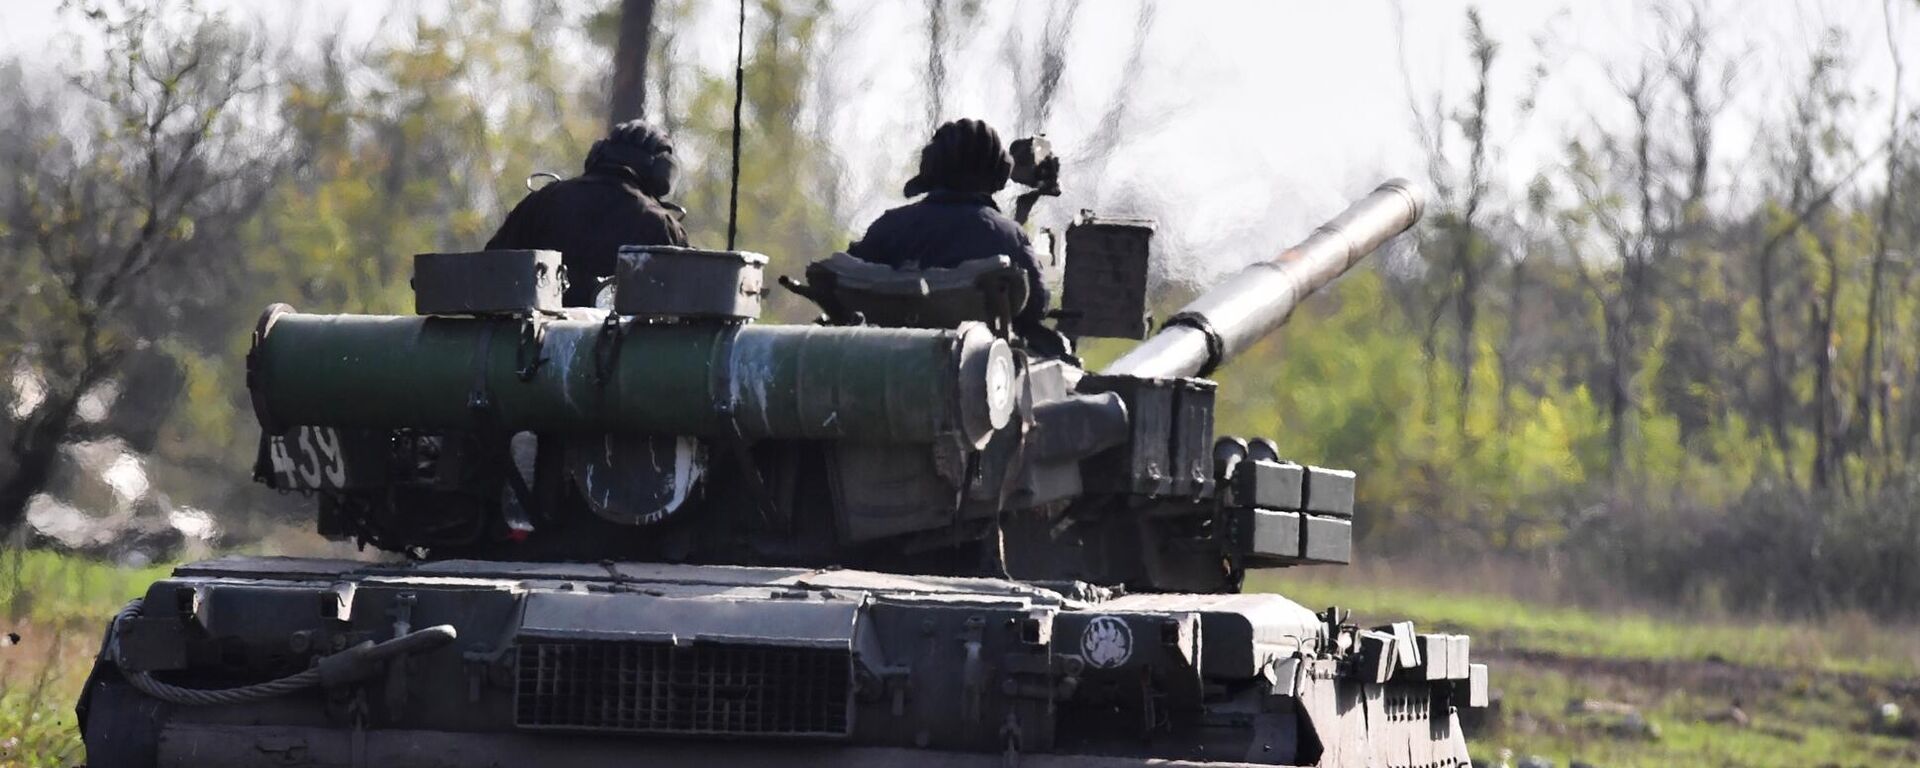 يتم إرسال دبابة تي-80 لإطلاق النار الحي في مواقع القوات المسلحة لأوكرانيا في منطقة دونيتسك - سبوتنيك عربي, 1920, 17.01.2023